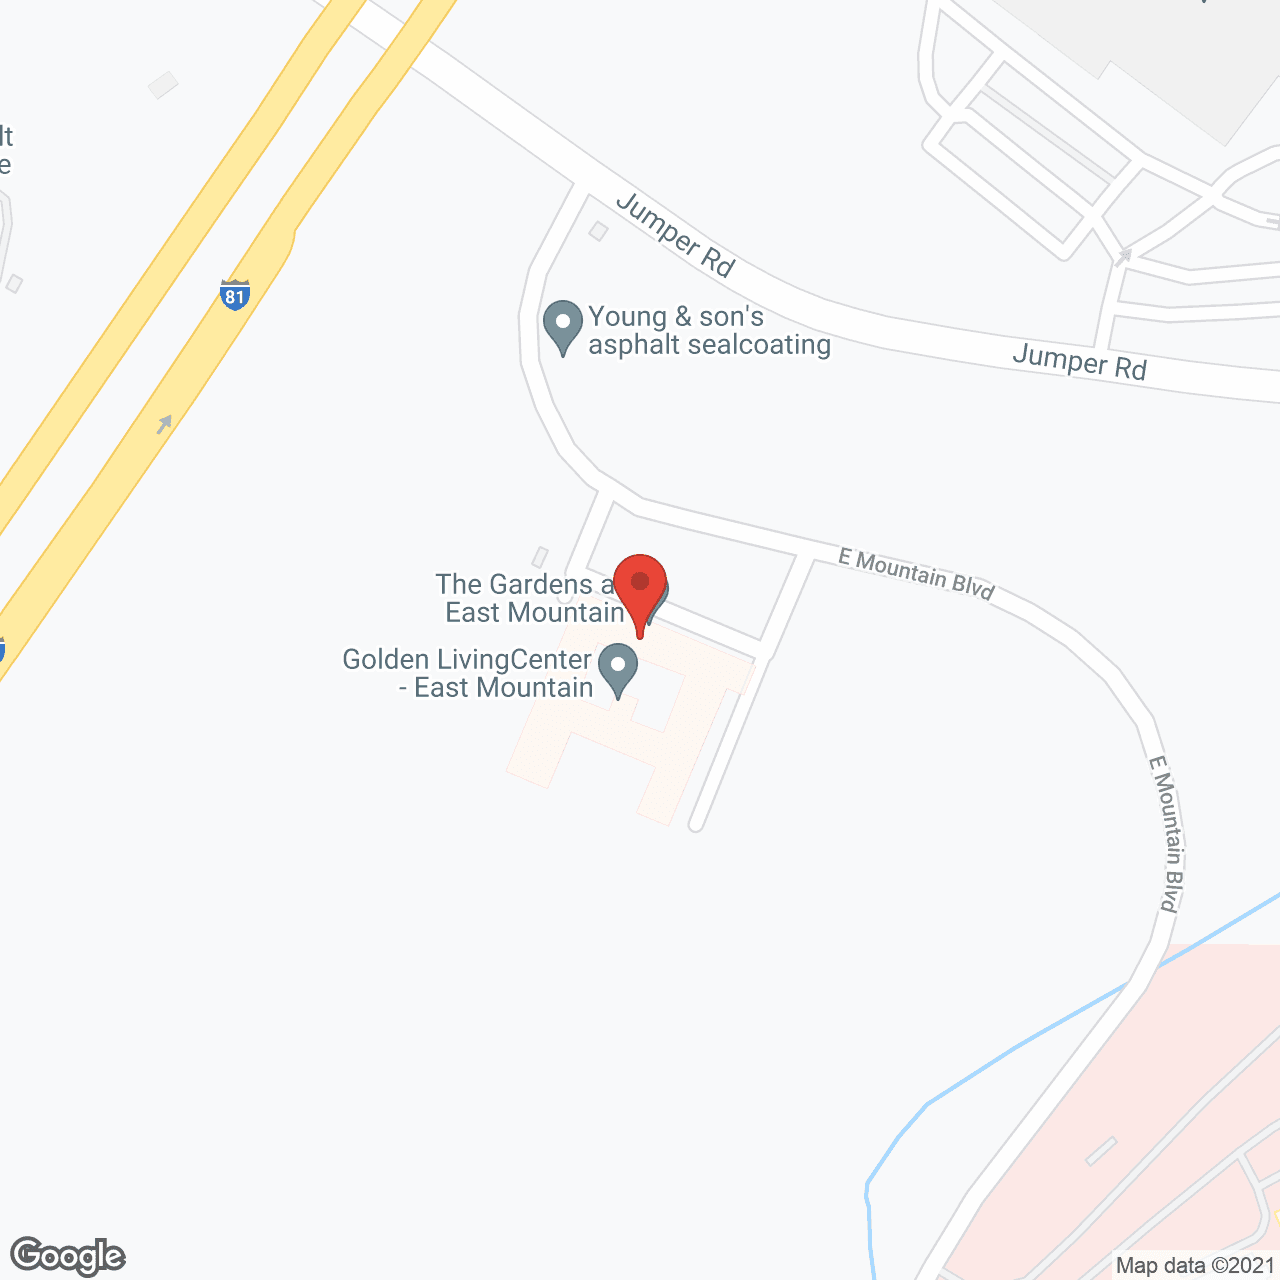 Golden Living Center - East Mountain in google map